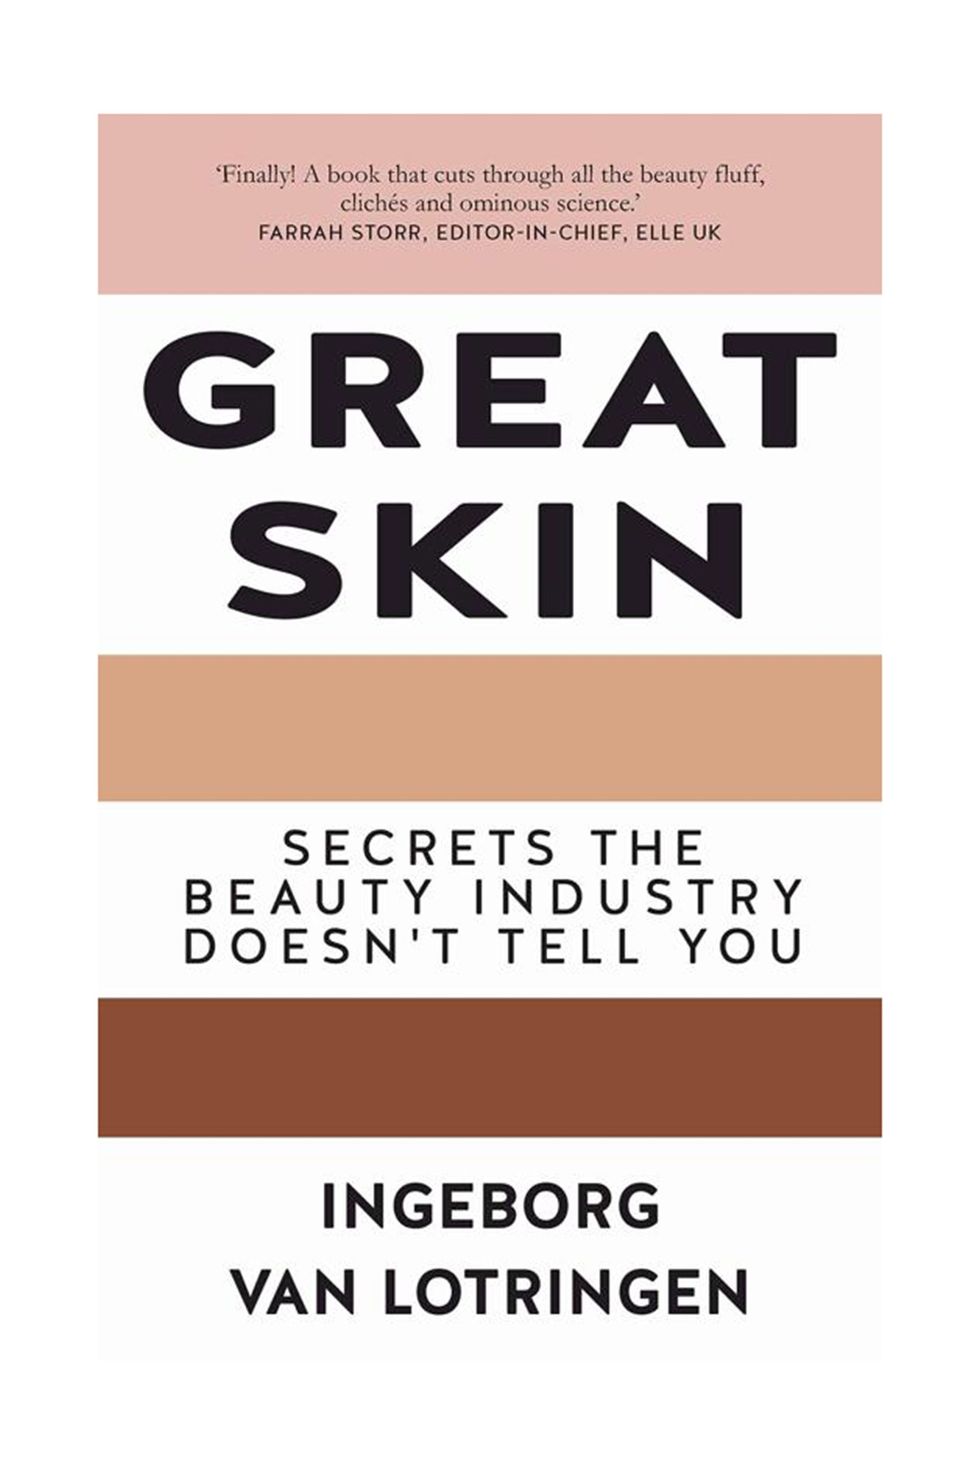 Great Skin - Secrets the Beauty Industry Doesn't Tell You by Ingeborg Van Lotringen